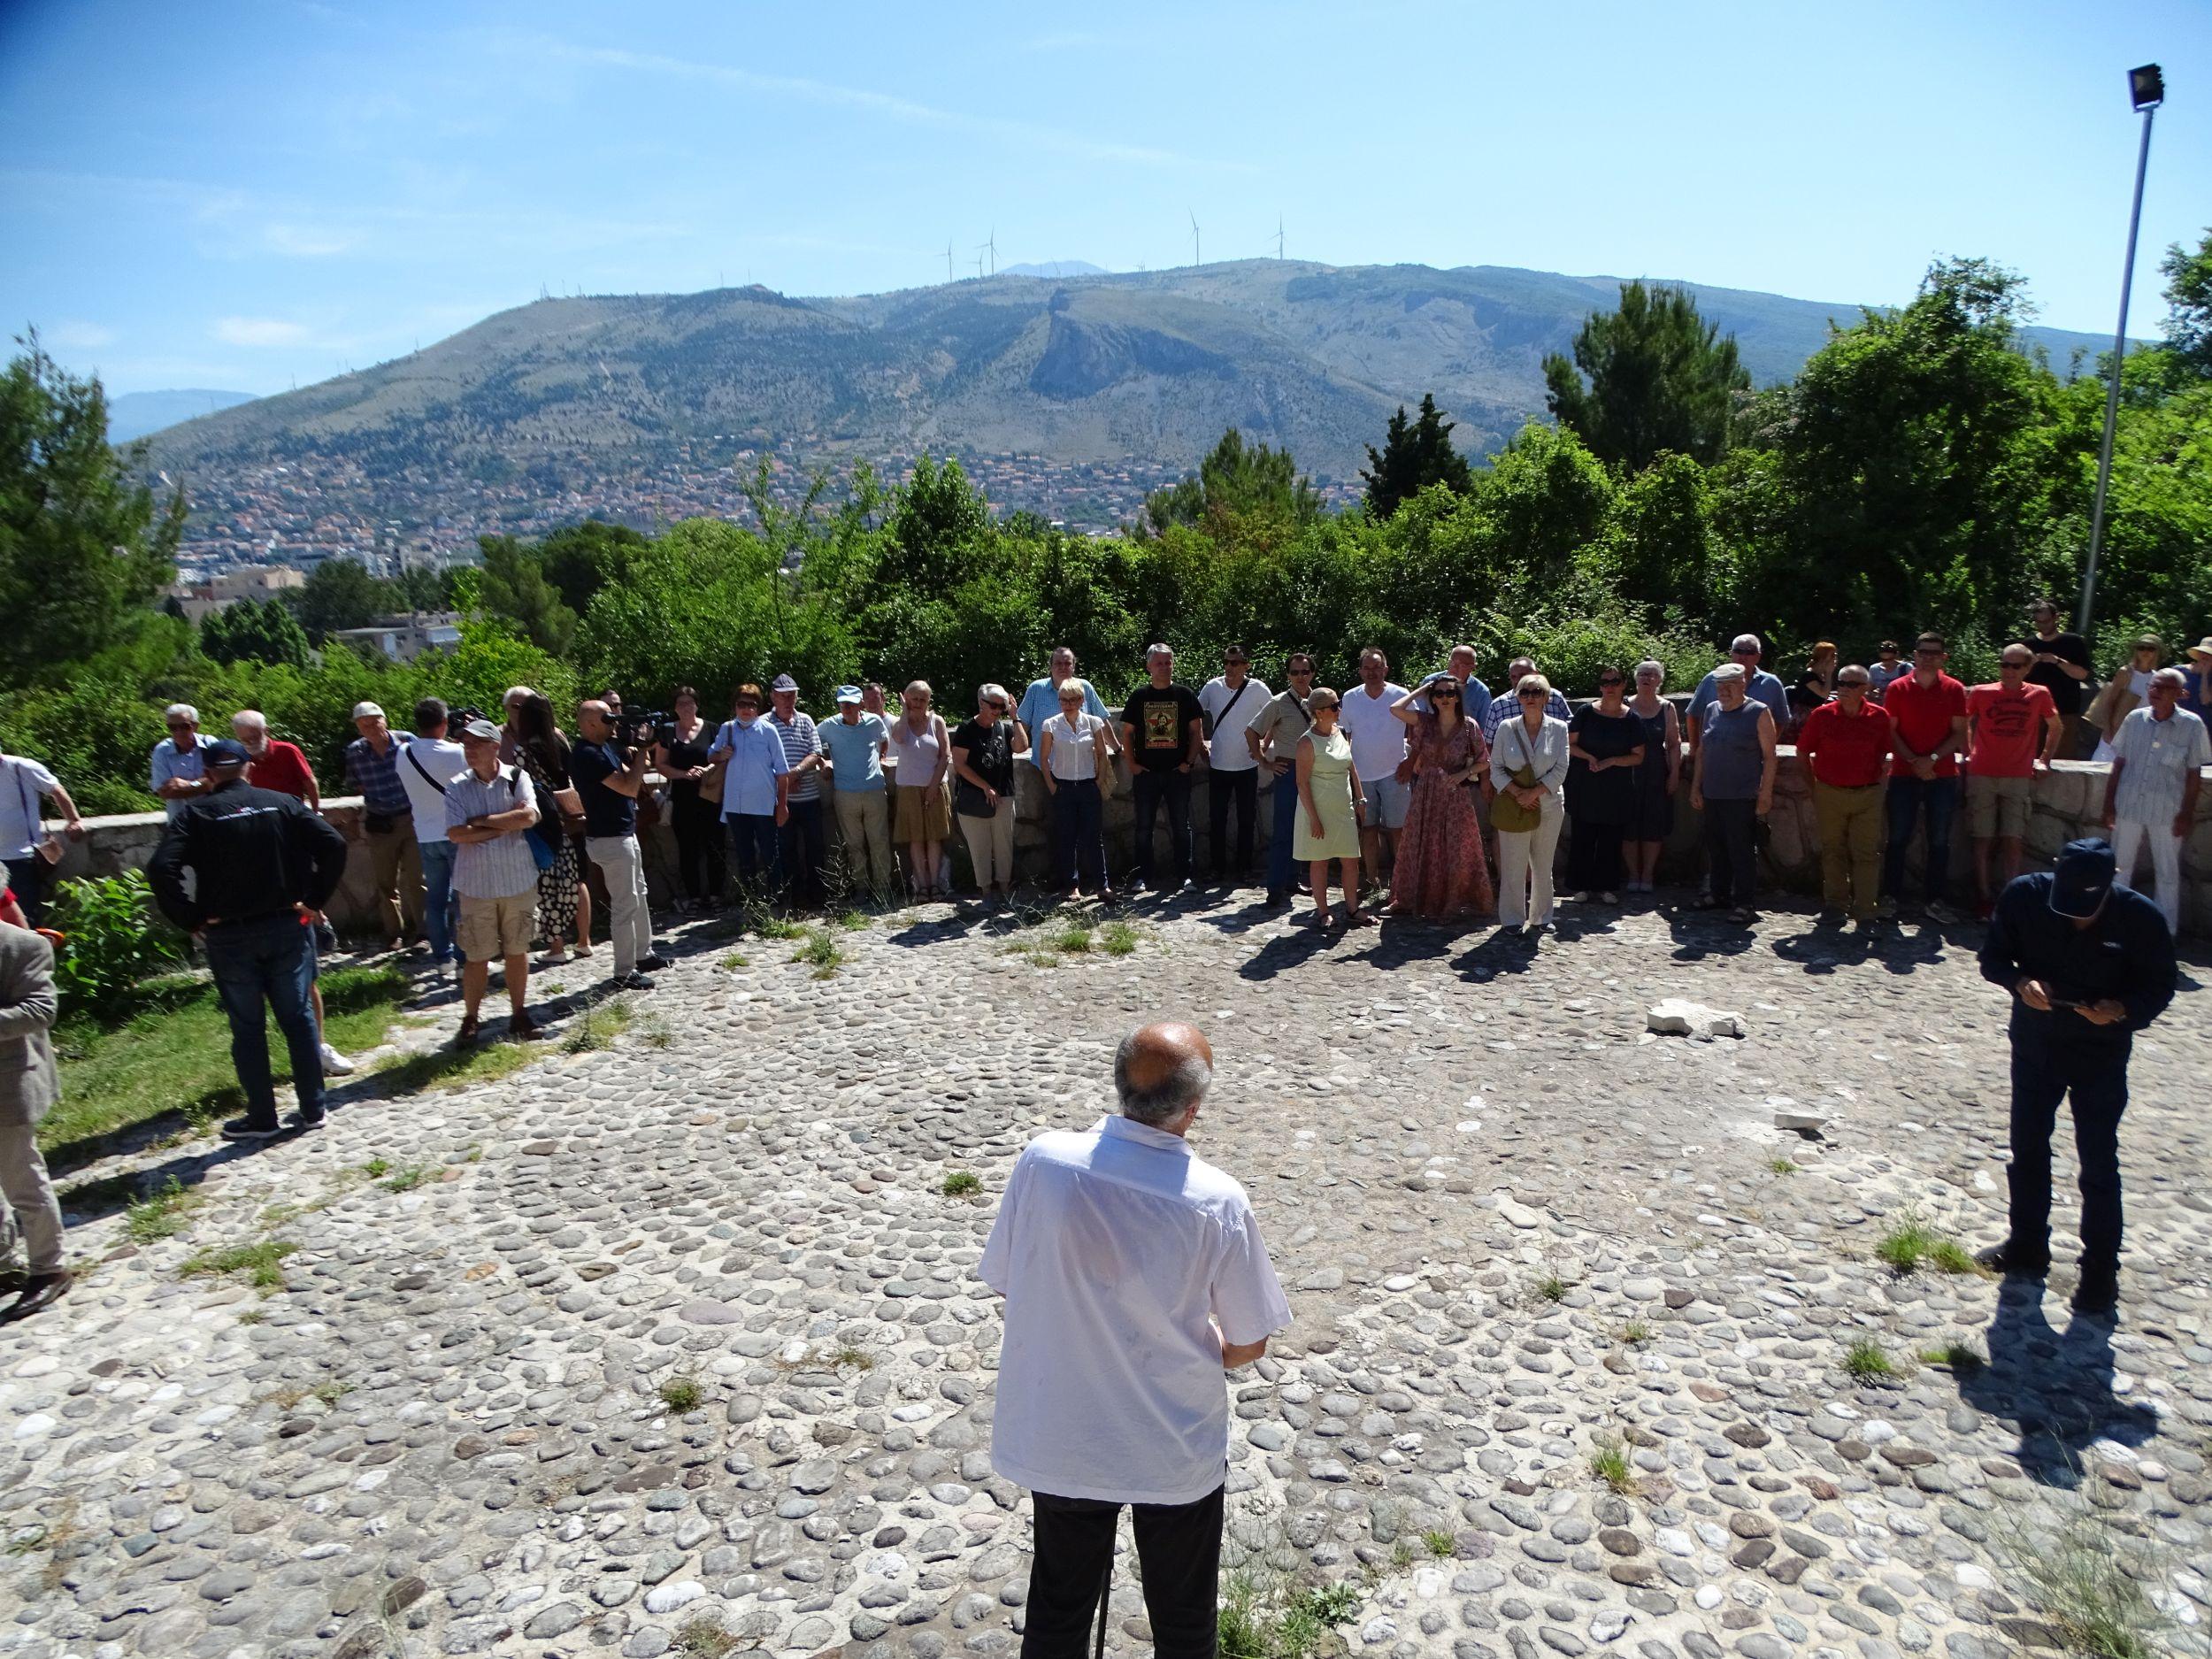 Antifašista iz Splita na Partizanskom groblju: Ovi koji su rušili čujem da se predstavljaju kao Hrvati, oni to nisu, oni su izrod mog naroda